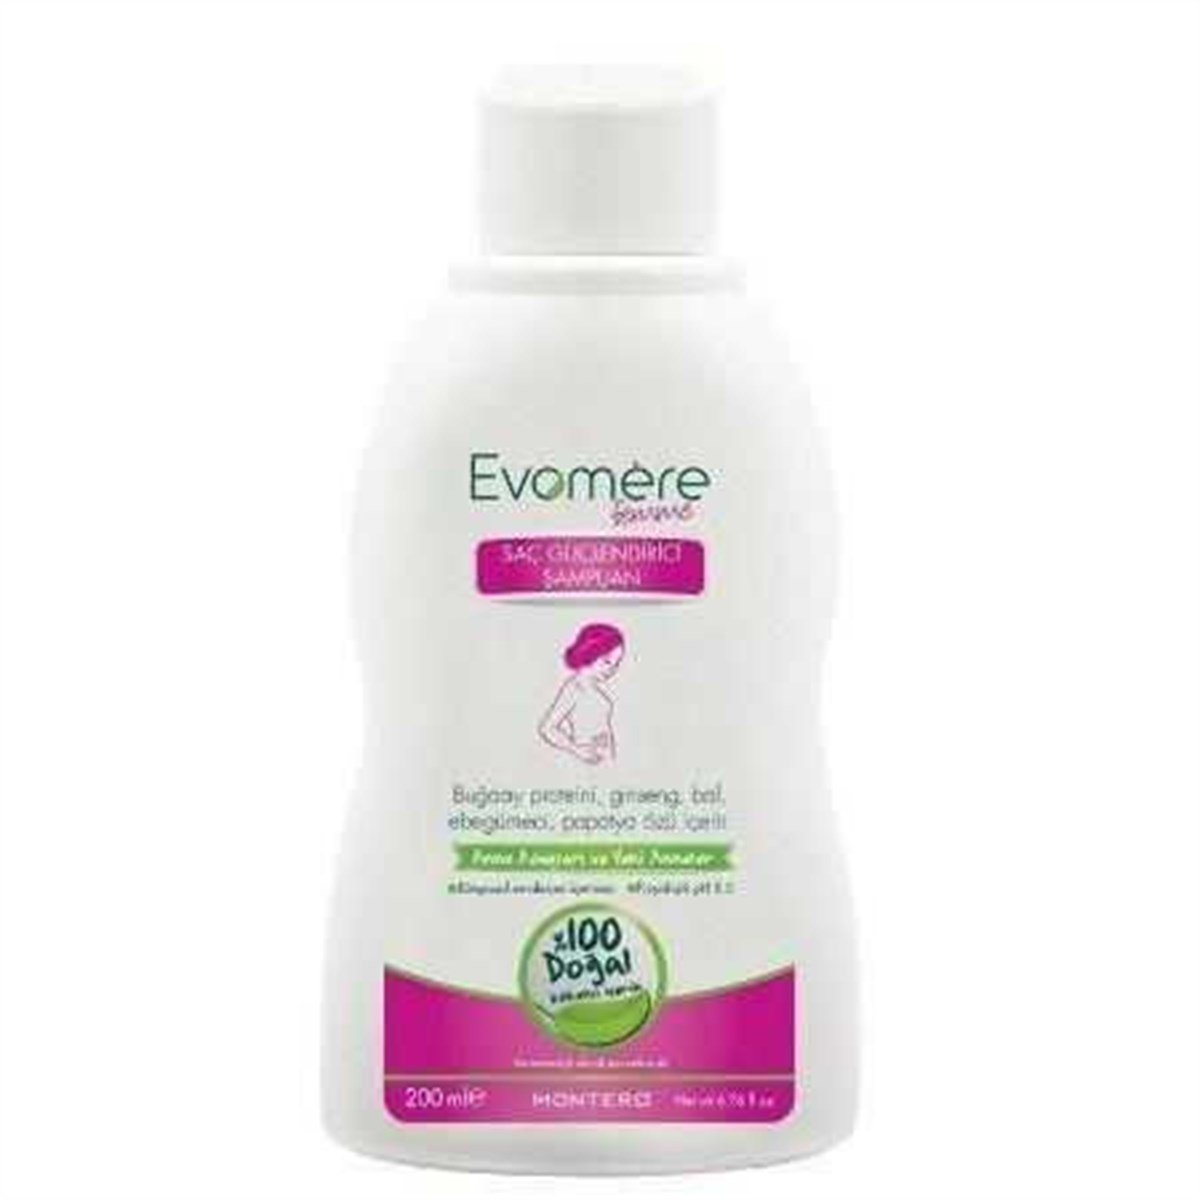 Evomere Femme Saç Güçlendirici Şampuan 200ml Fiyatı | Dermosiparis.com